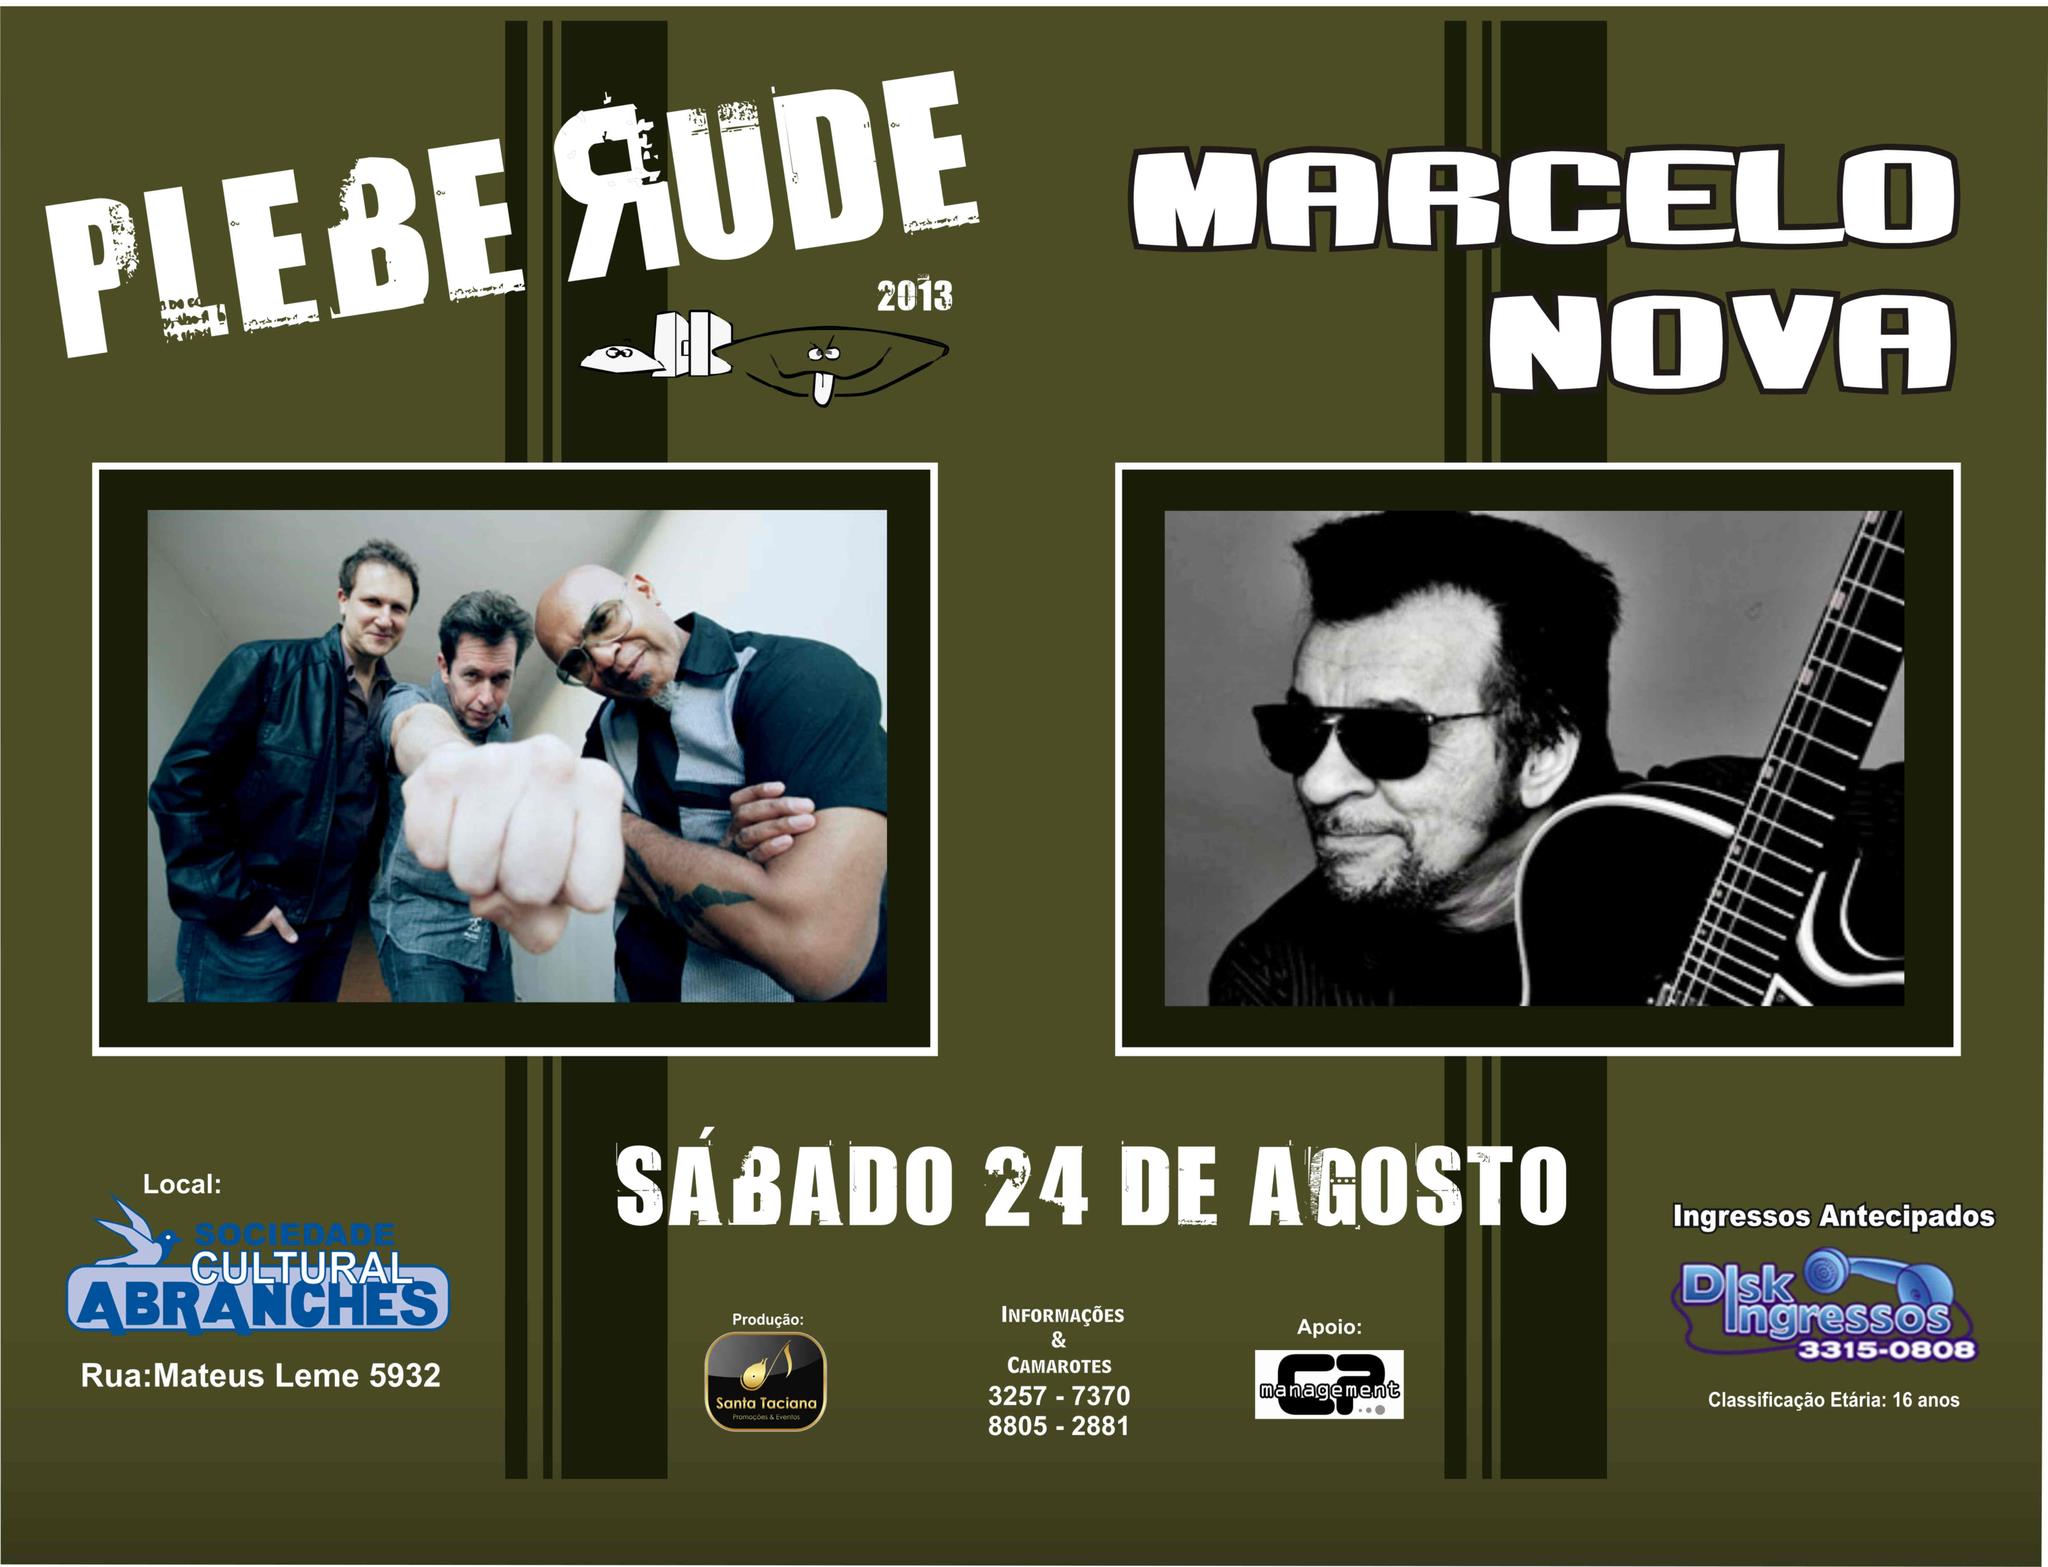 24/08 – Plebe Rude & Marcelo Nova